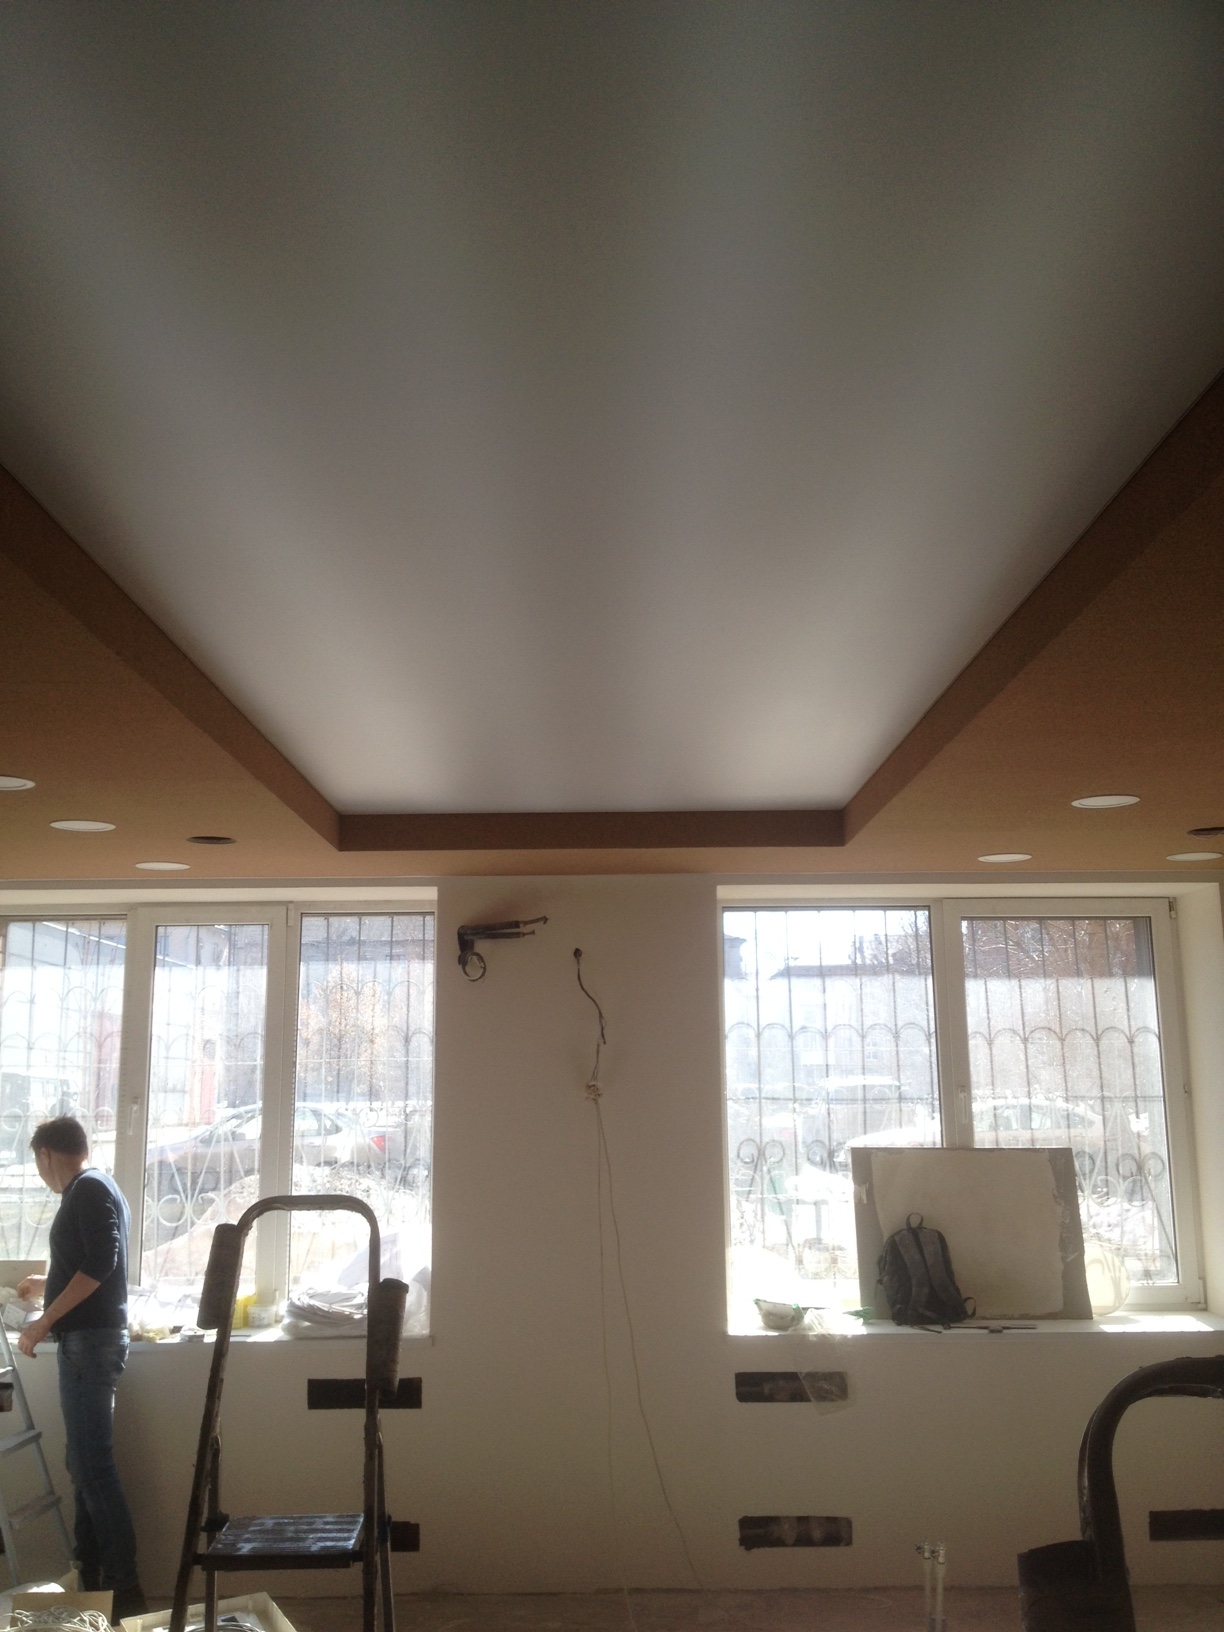 Неравномерное освещение светового натяжного потолка.